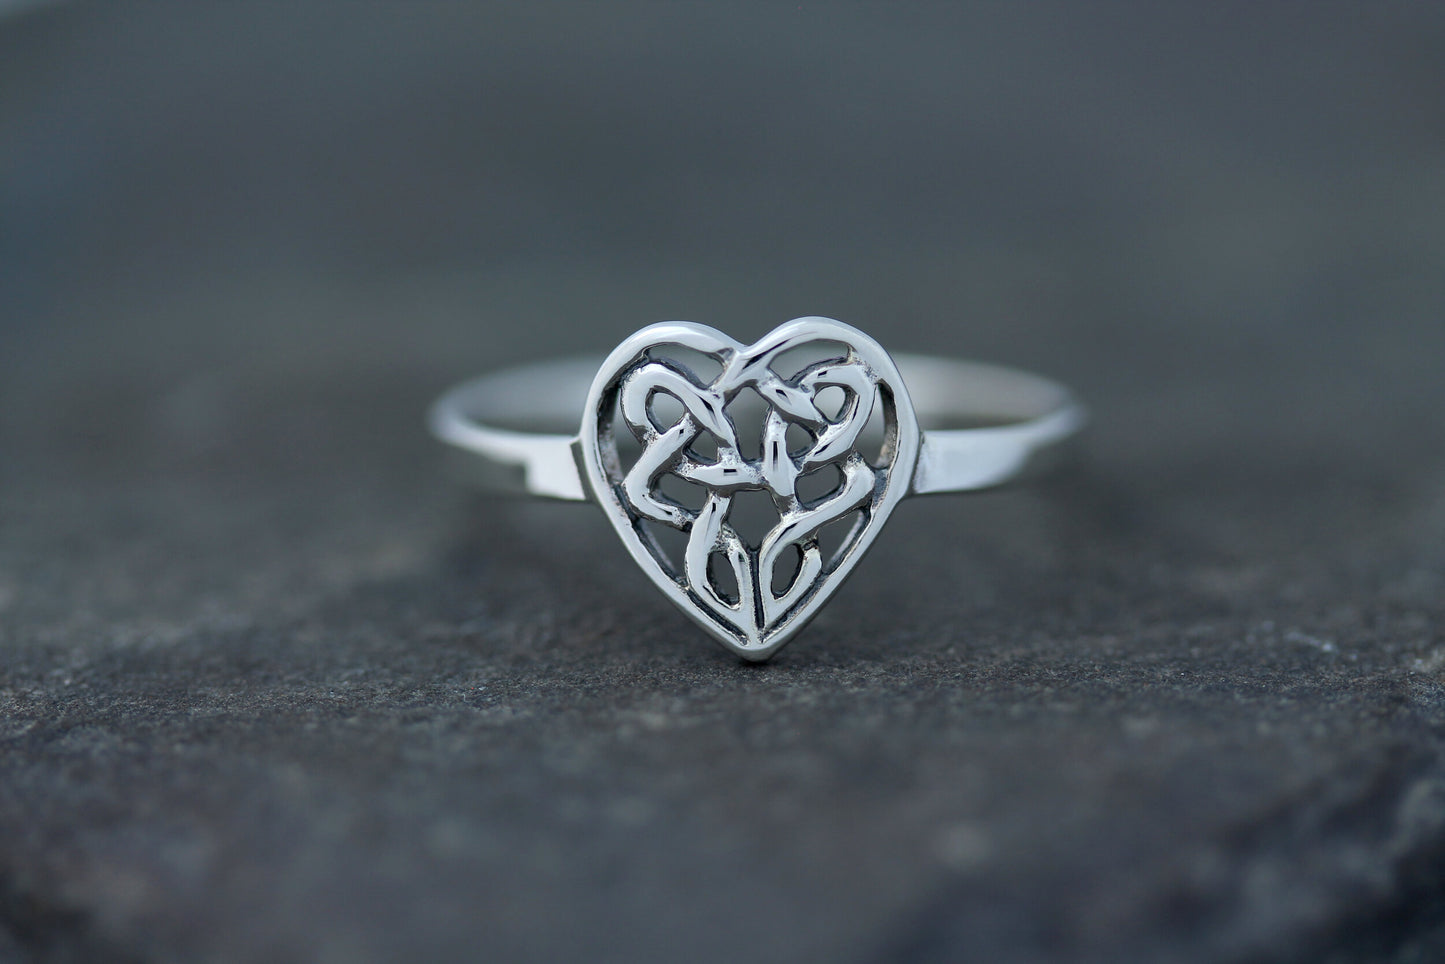 Celtic Knot Ring - Celtic Heart